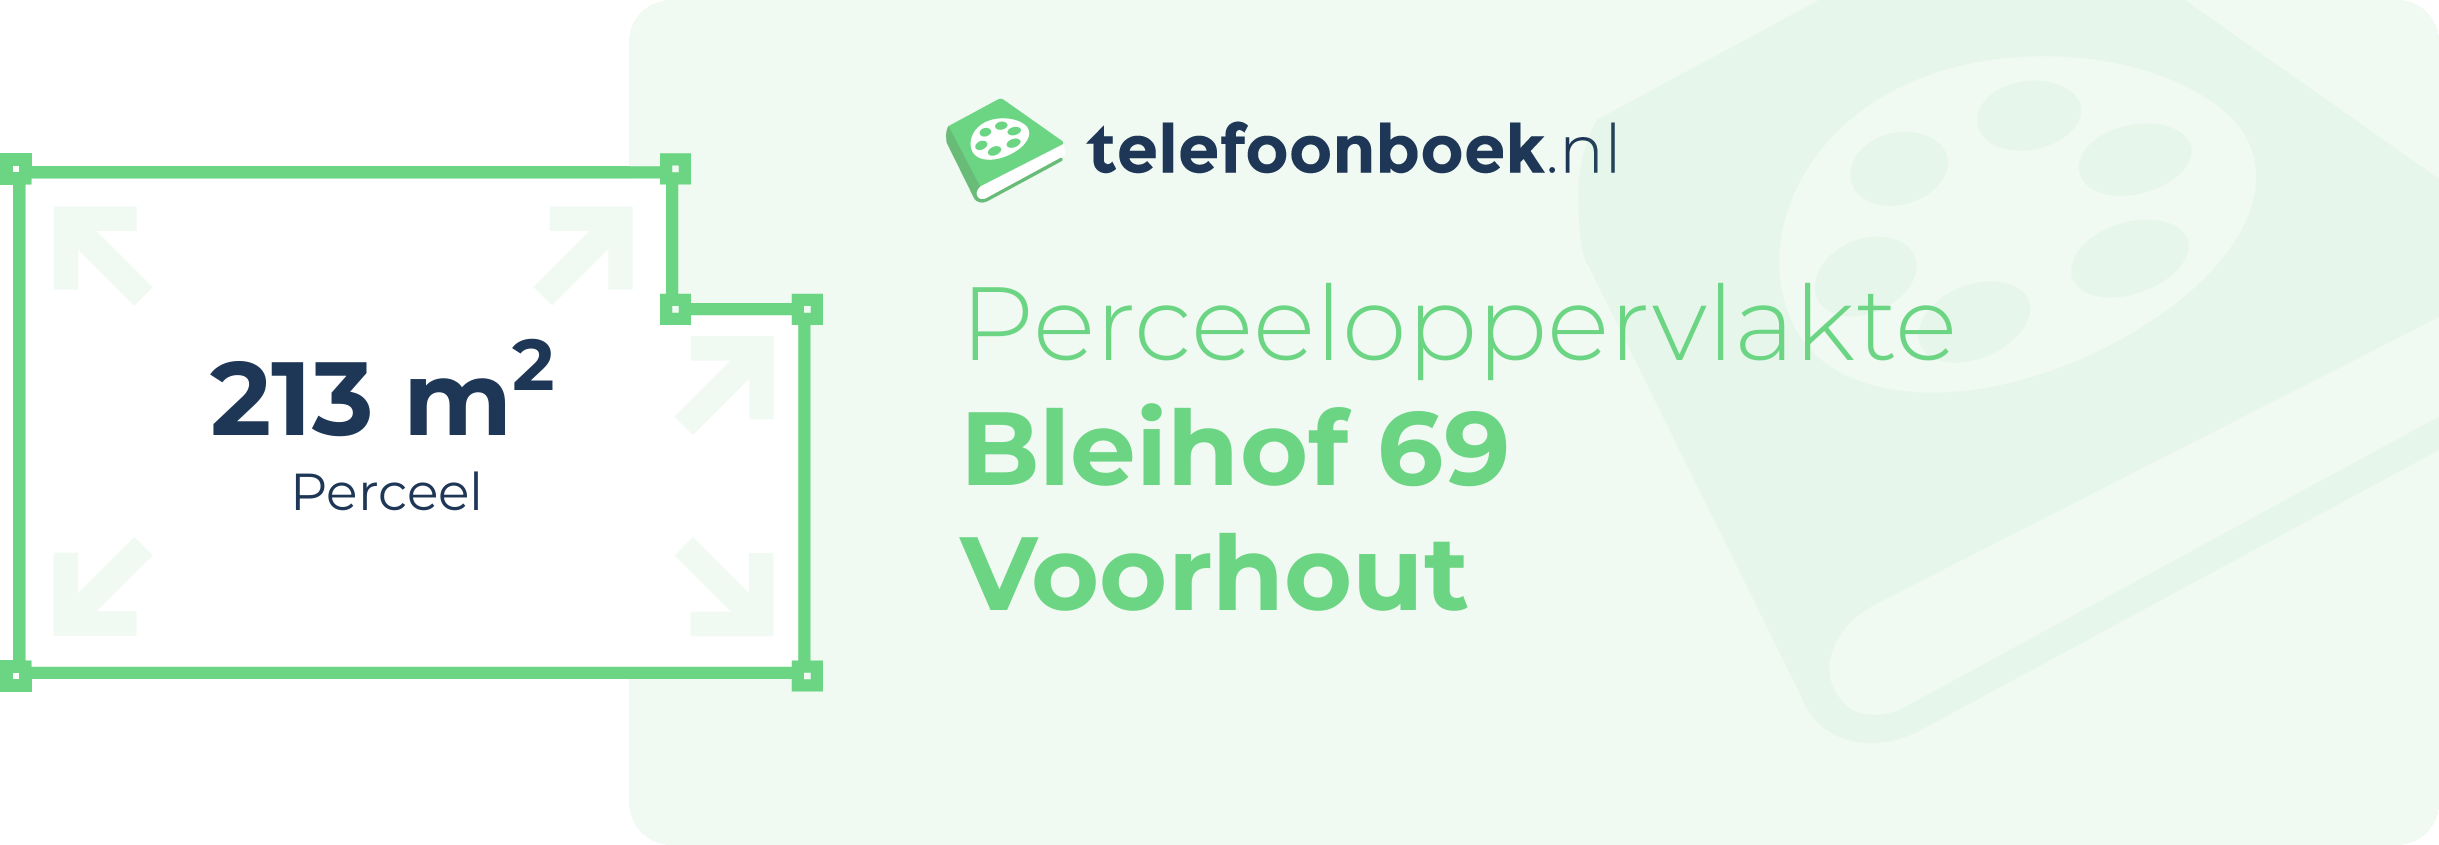 Perceeloppervlakte Bleihof 69 Voorhout